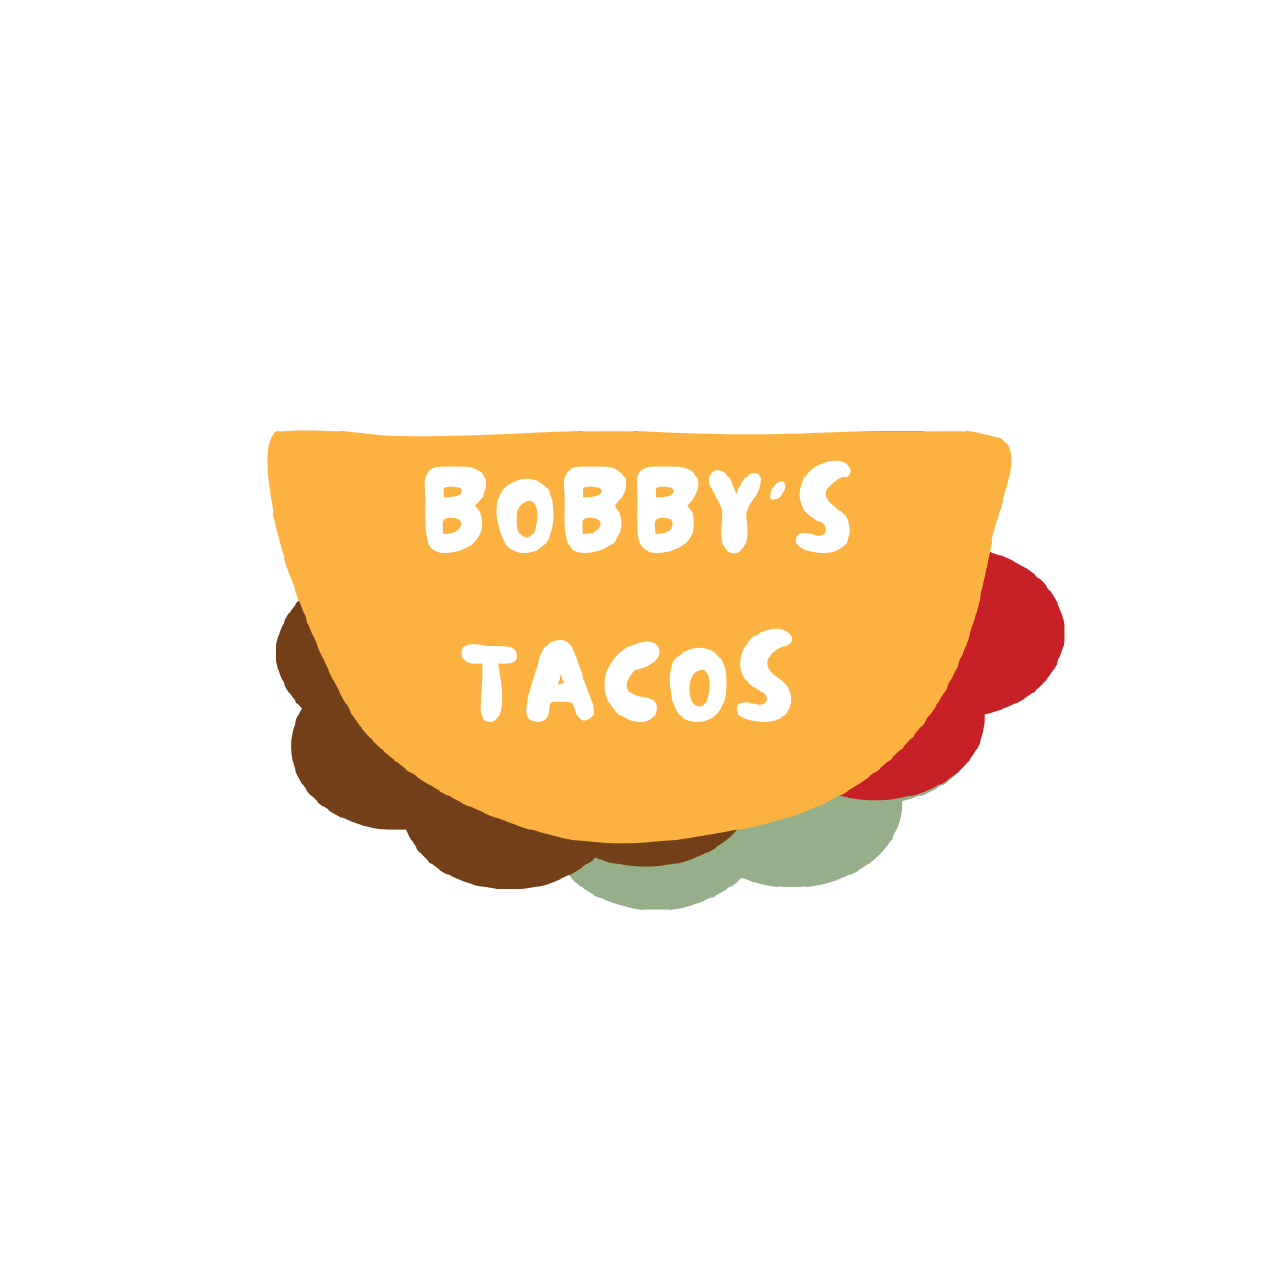 Bobby's Tacos